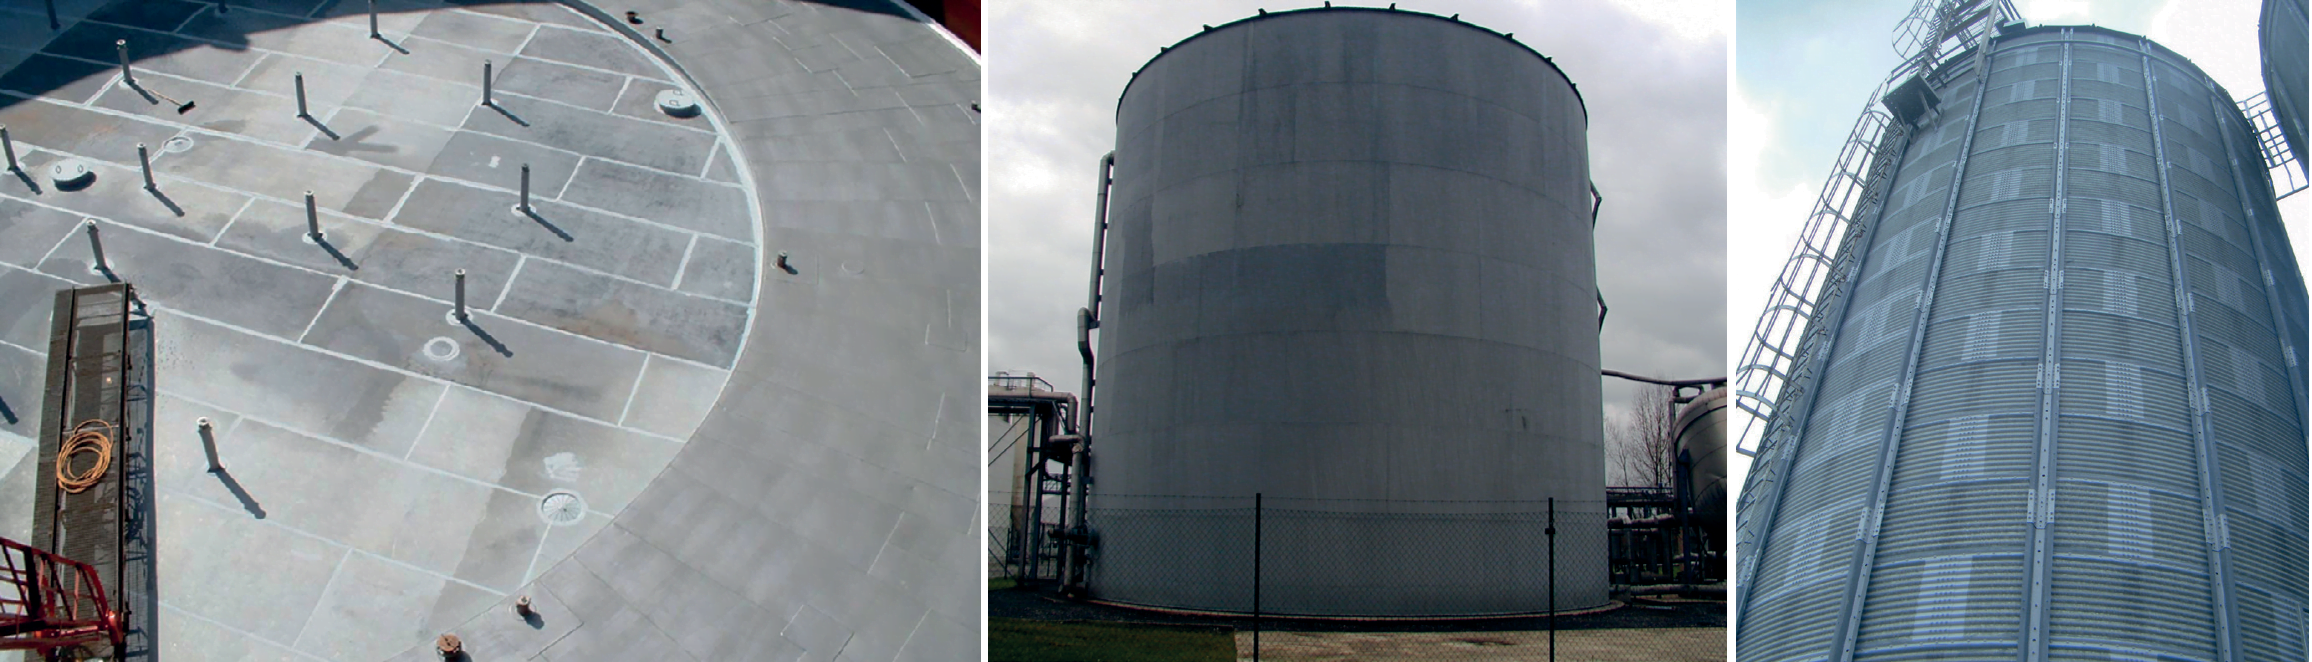 Zinga on tanks, containers & silos